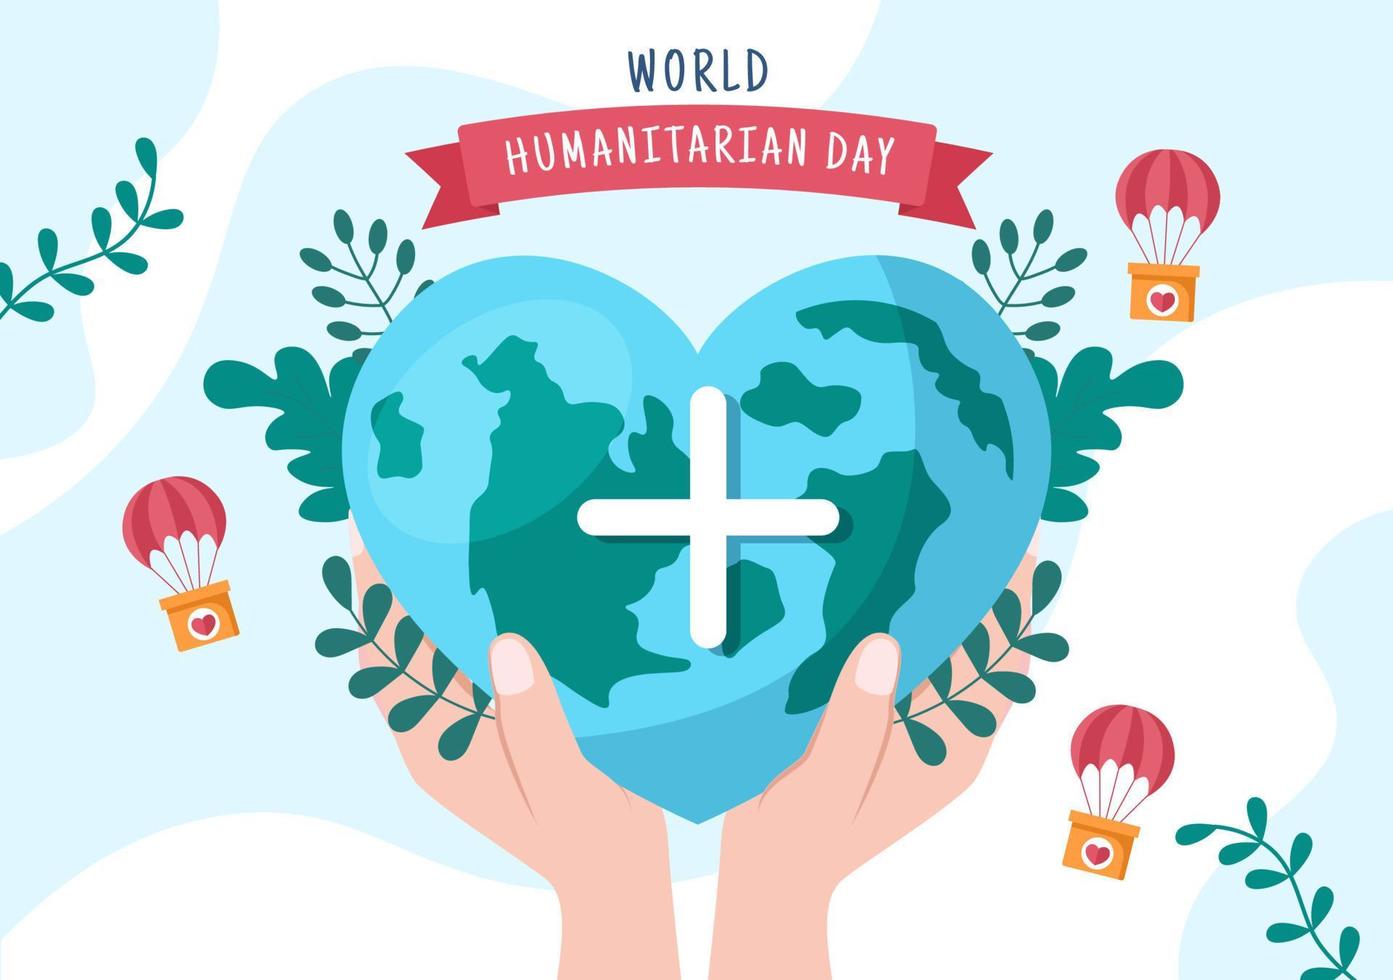 wereld humanitaire dag met wereldwijde viering van het helpen van mensen, samenwerken, liefdadigheid, donatie en vrijwilligerswerk in platte cartoonillustratie vector